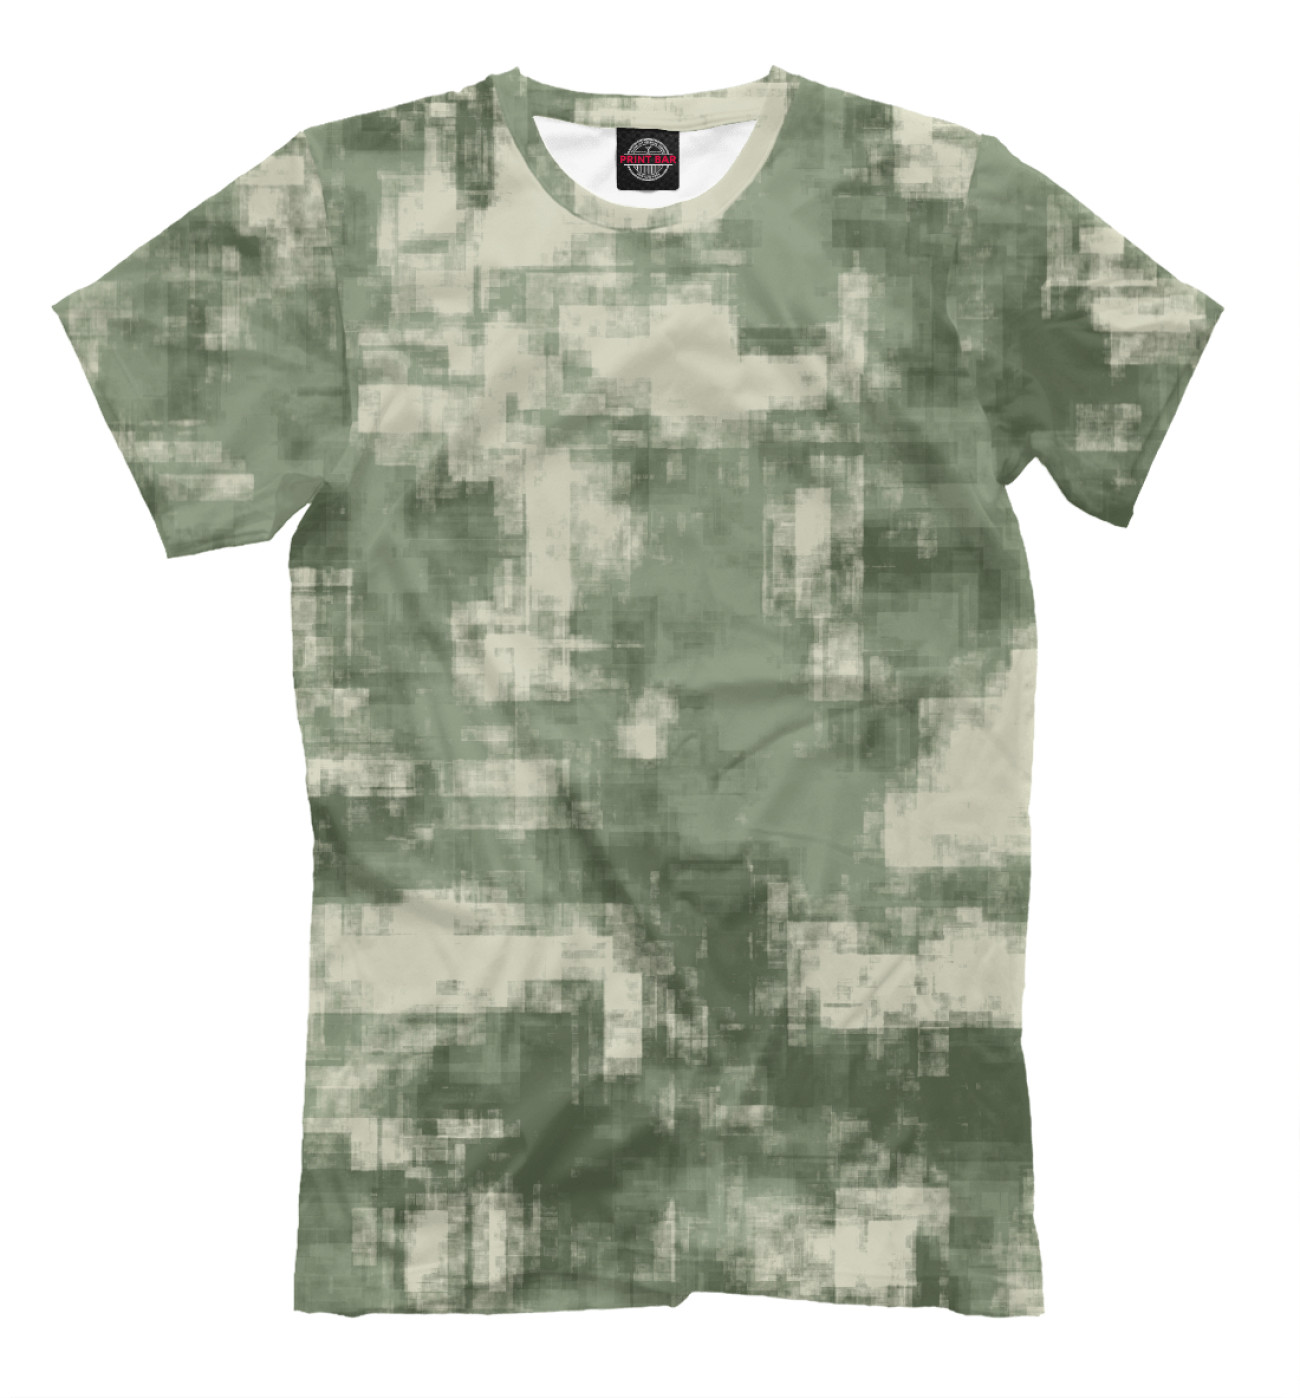 Мужская Футболка Военный камуфляж- одежда для мужчин и женщин, артикул: CMF-442561-fut-2